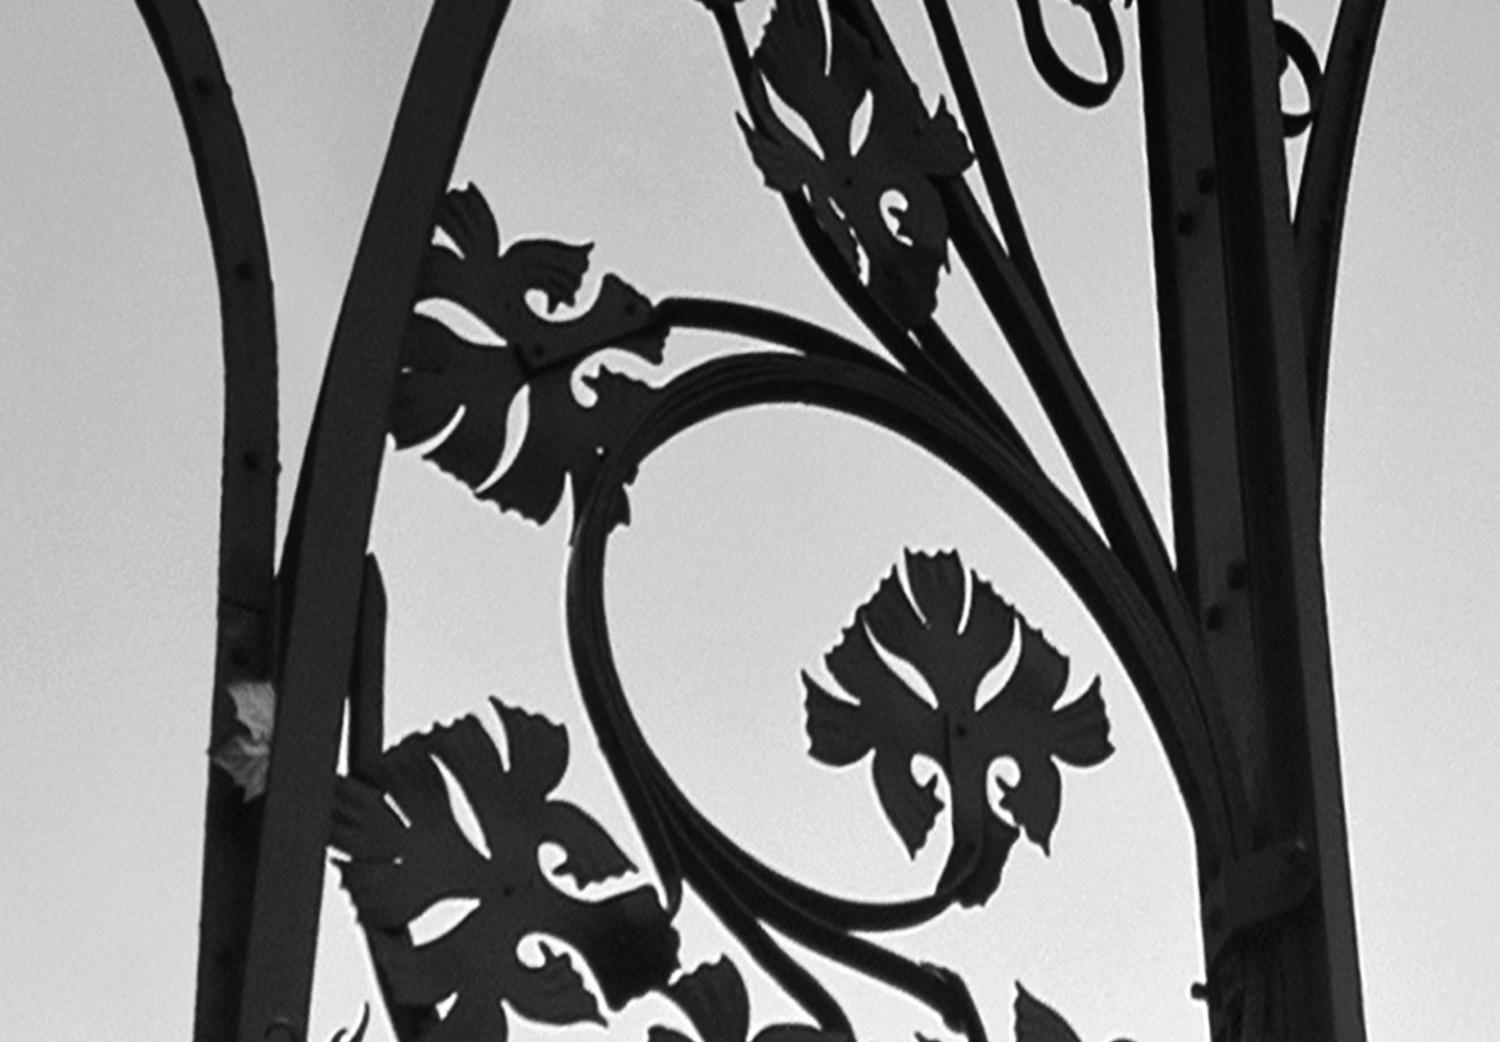 Cuadro Farola en Barcelona - fotografía en blanco y negro con arquitectura